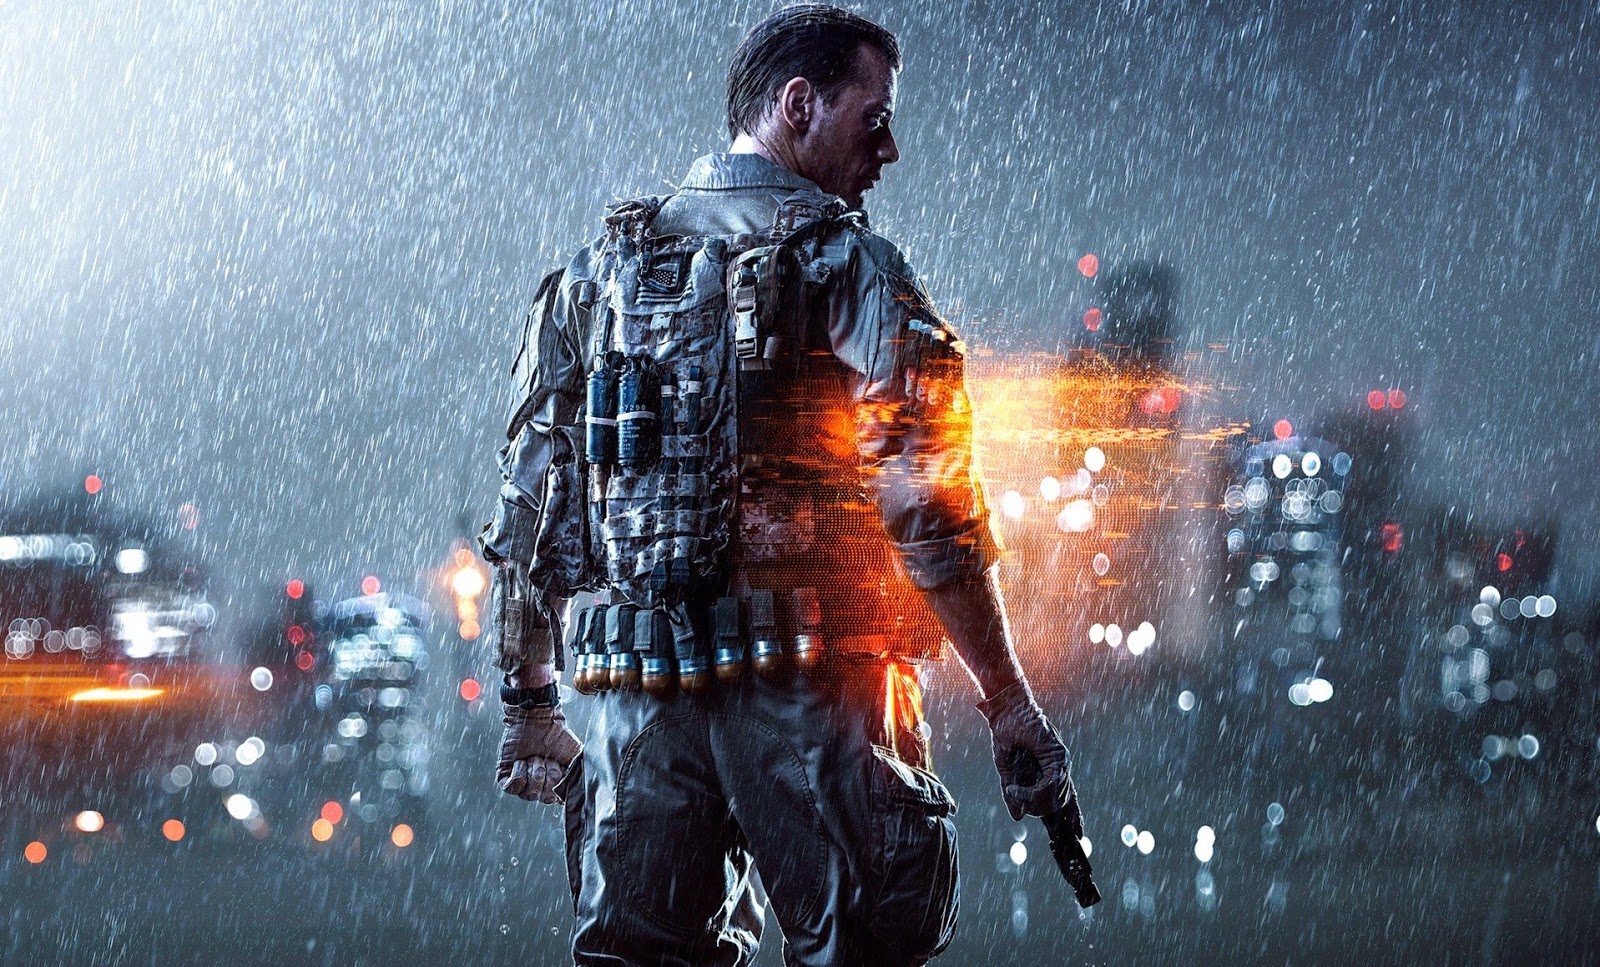 Battlefield 4: Premium Edition será lançado em 21 de Outubro